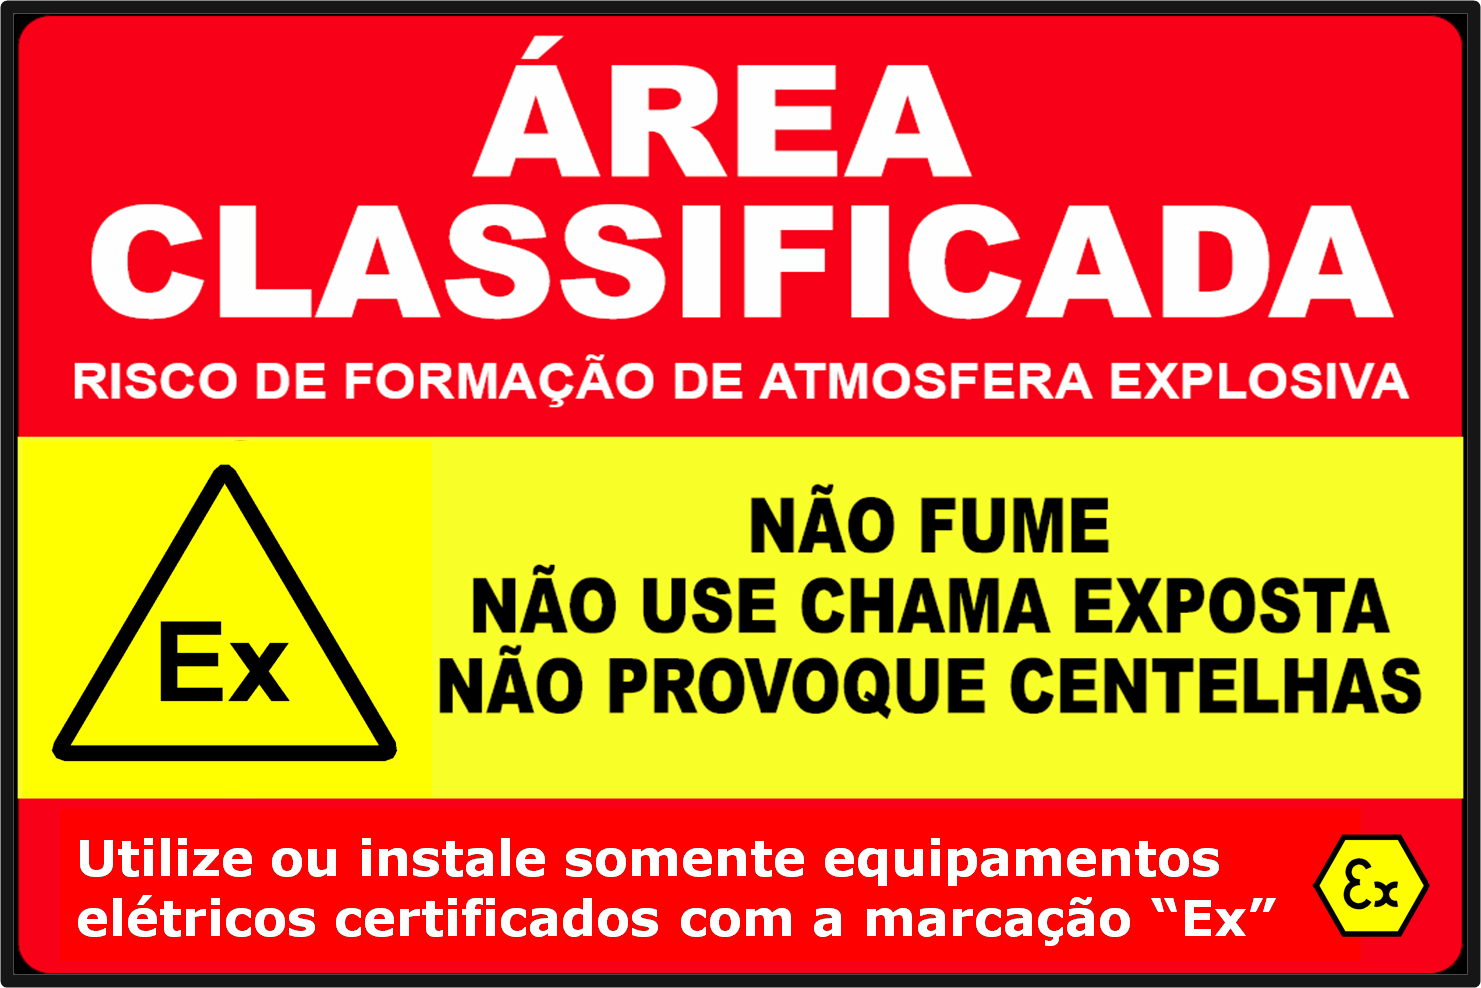 Placa de sinalização de segurança para áreas classificadas contendo atmosferas explosivas